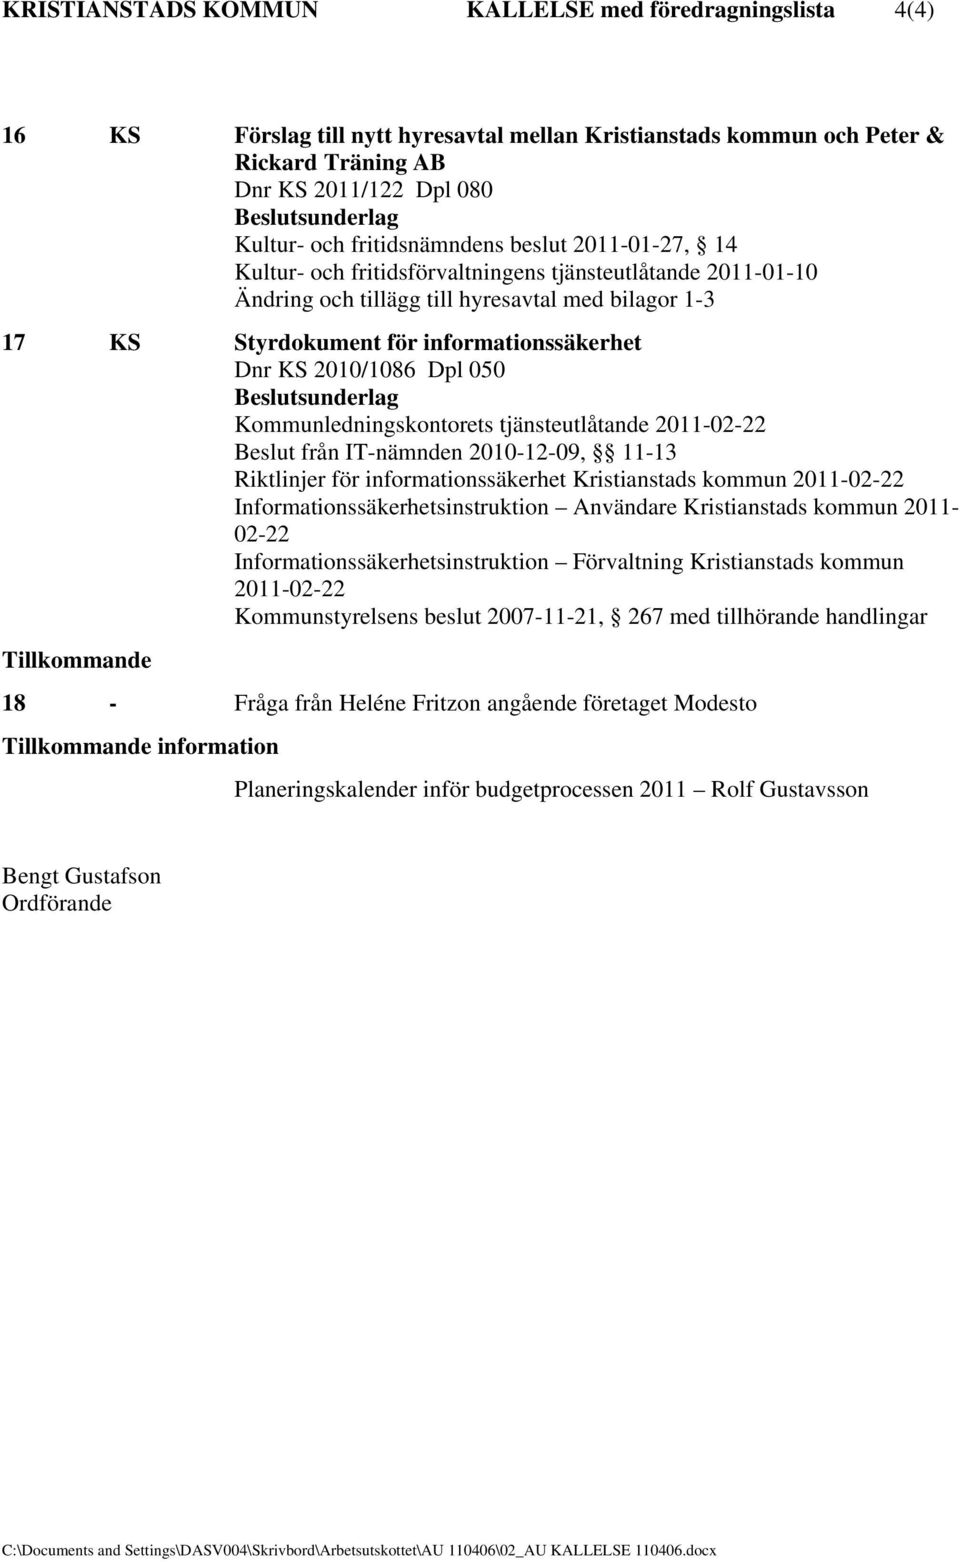 KS 2010/1086 Dpl 050 Kommunledningskontorets tjänsteutlåtande 2011-02-22 Beslut från IT-nämnden 2010-12-09, 11-13 Riktlinjer för informationssäkerhet Kristianstads kommun 2011-02-22